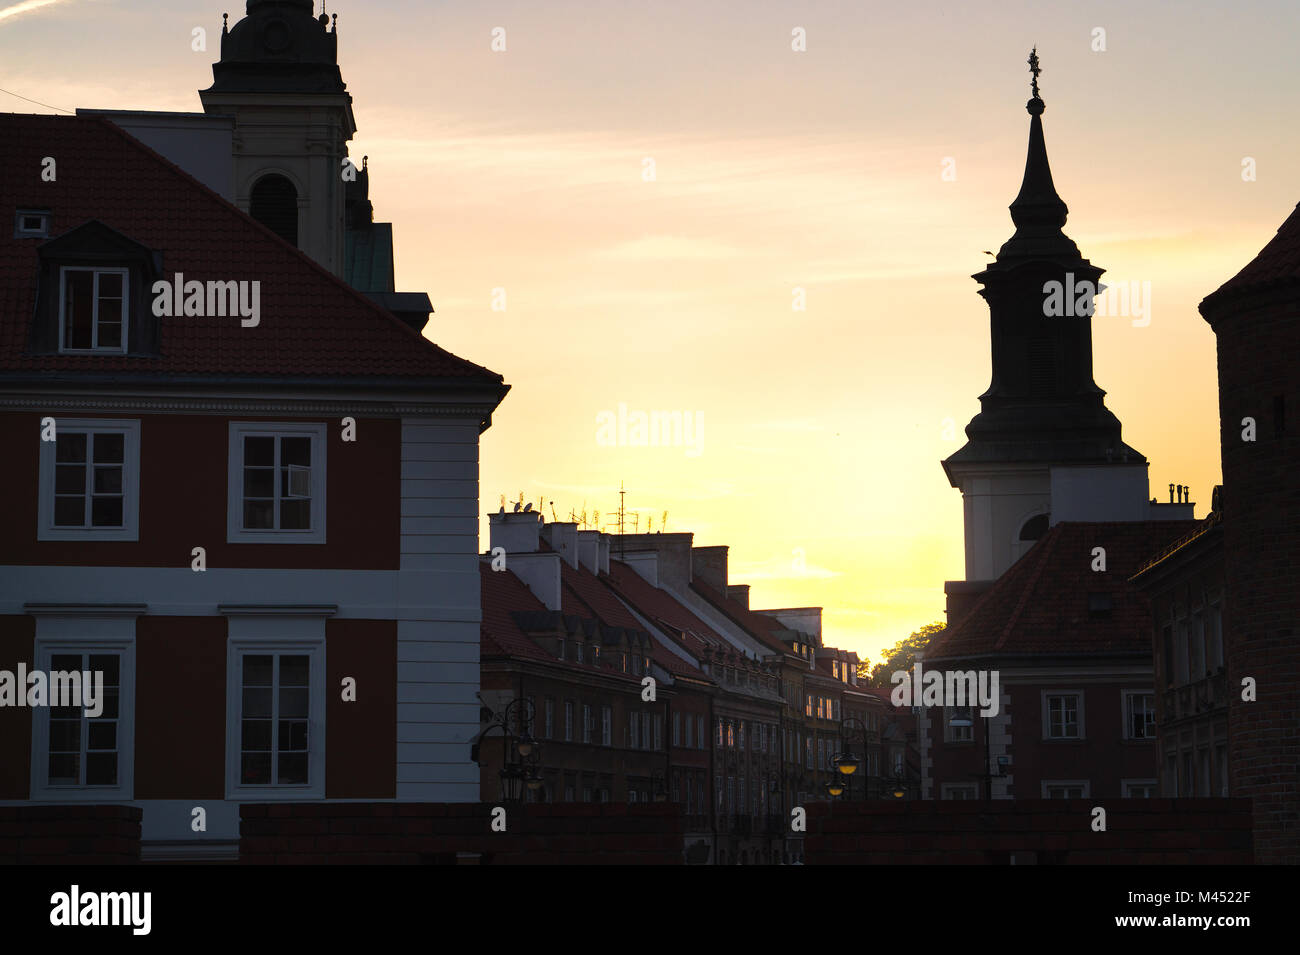 Sonnenuntergang und Sonnenaufgang in der Altstadt von Warschau, Polen. Alte Gebäude in dunklen Schatten, fast Silhouette. Schöne gelbe orange sky. Stockfoto